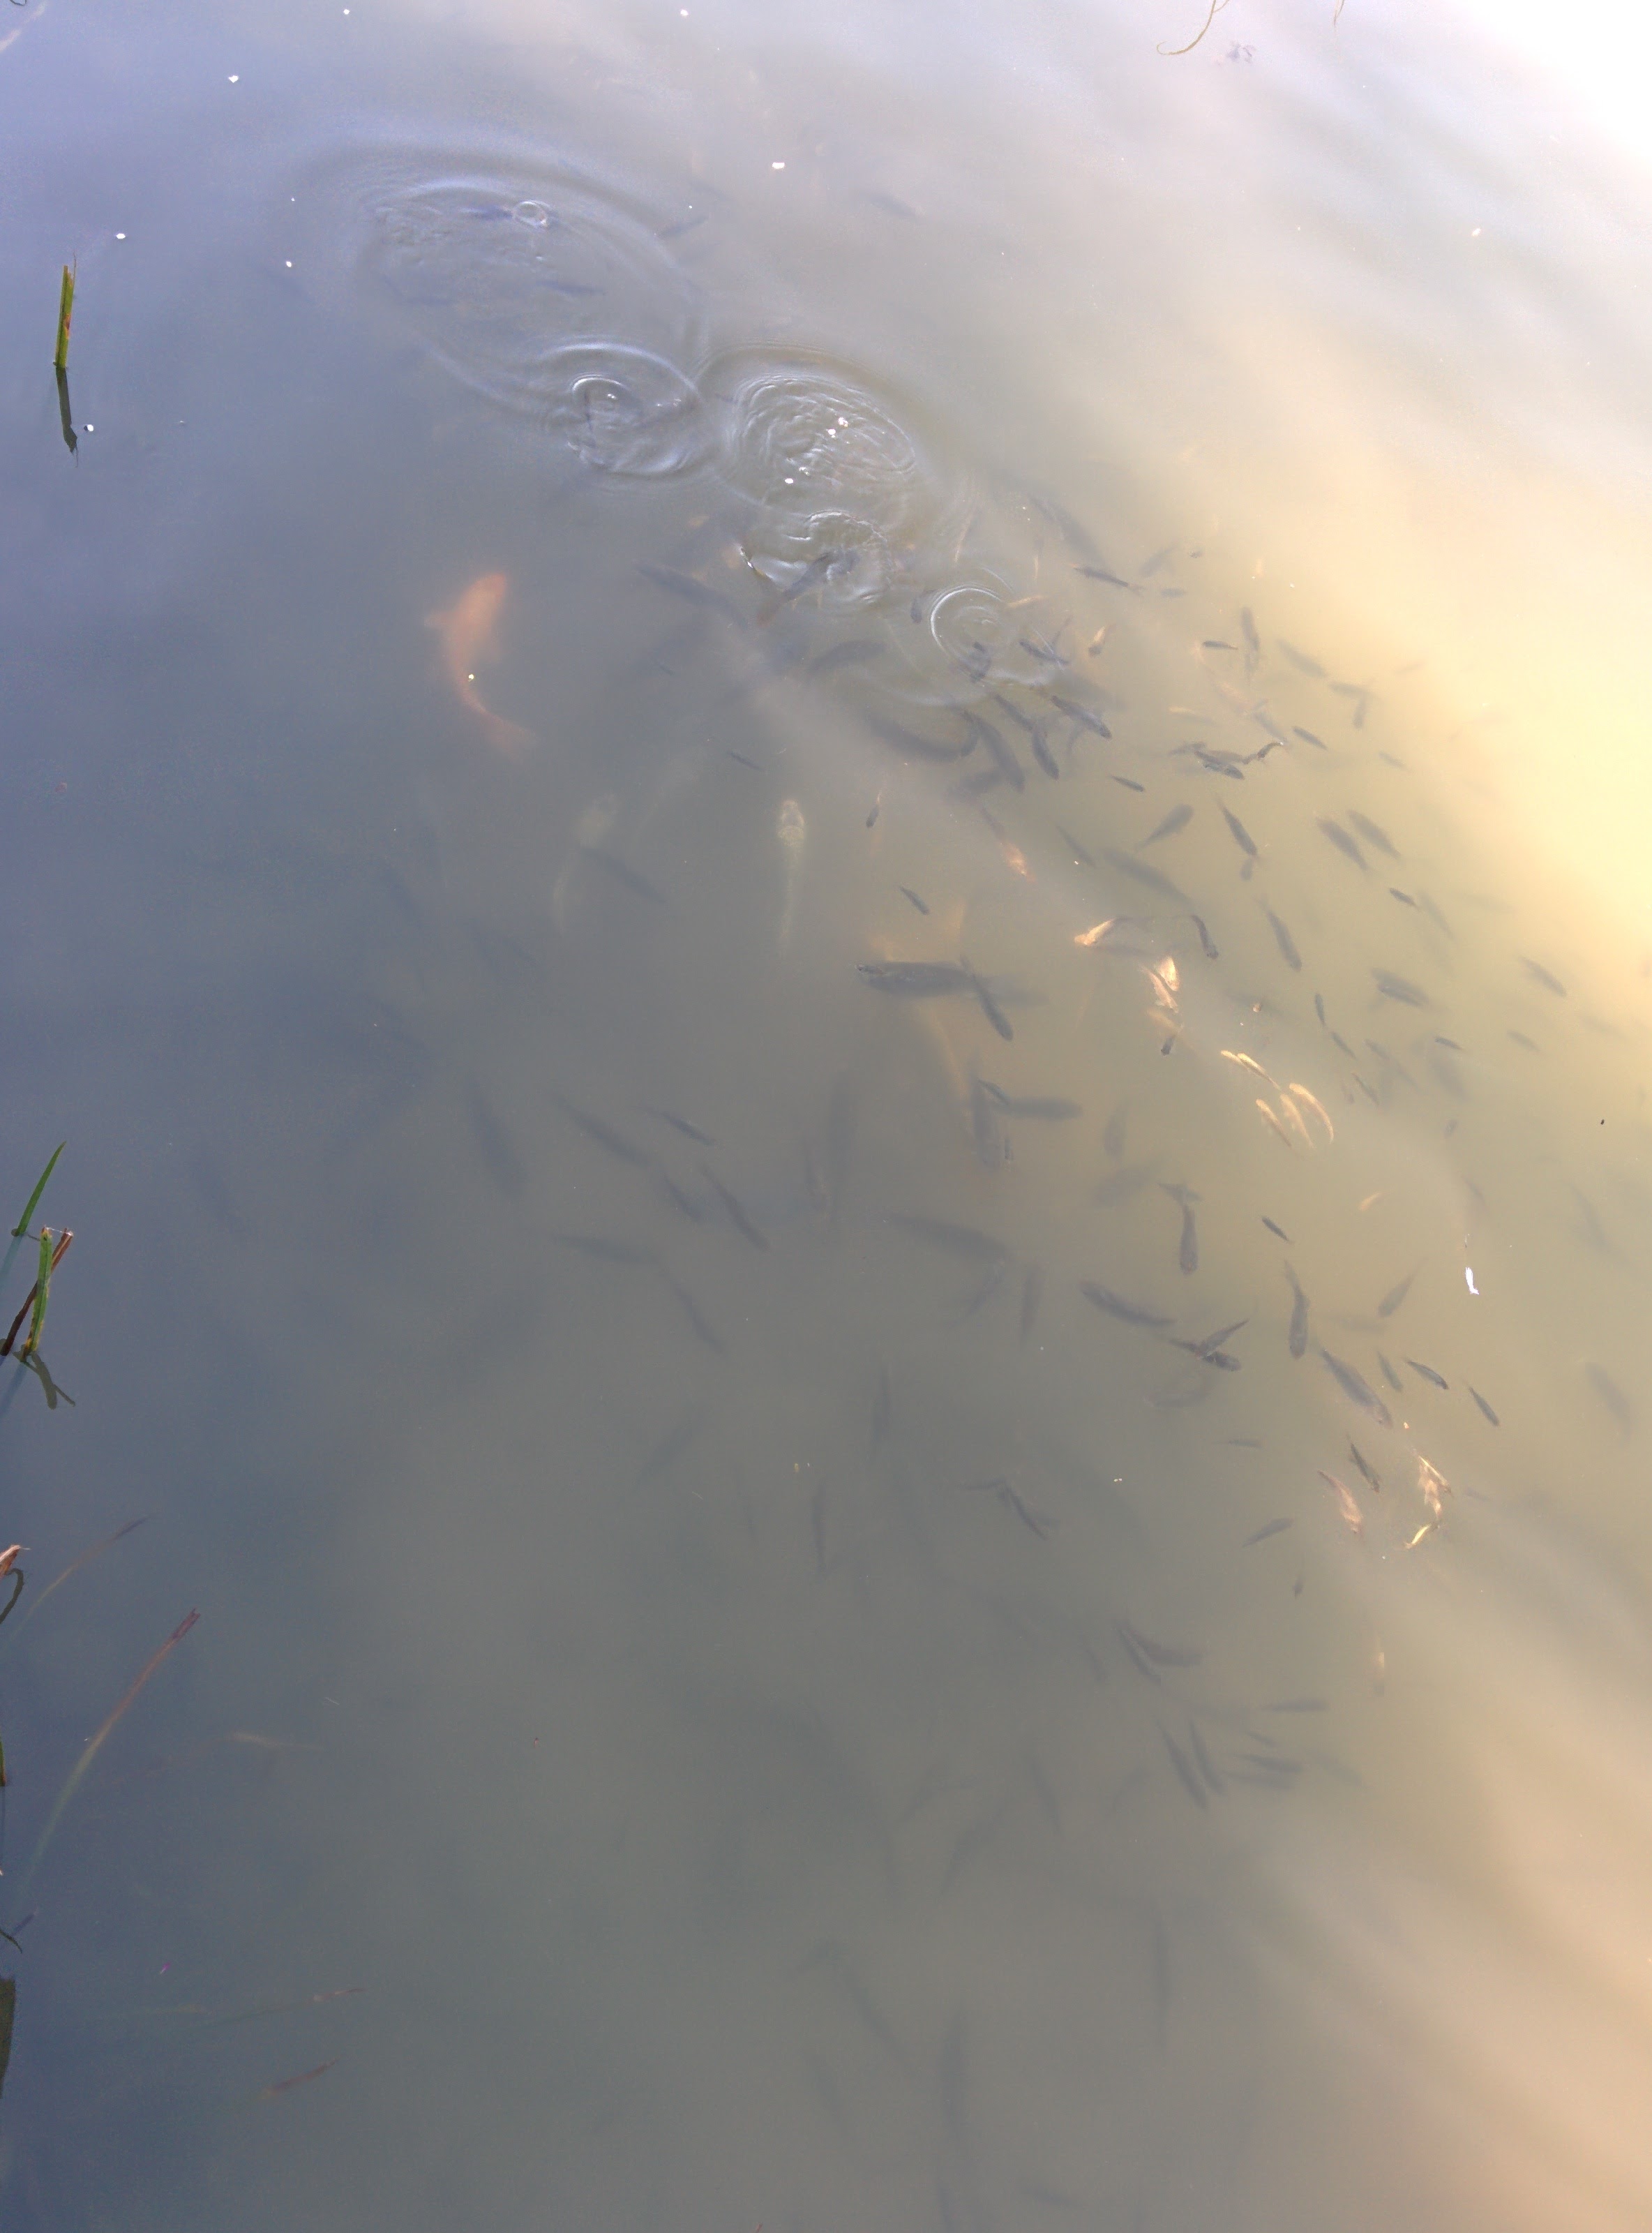 IMG_20151025_145526.jpg 유림공원 반도지에 사는 물고기 떼... 비단잉어, 금붕어, 붕어